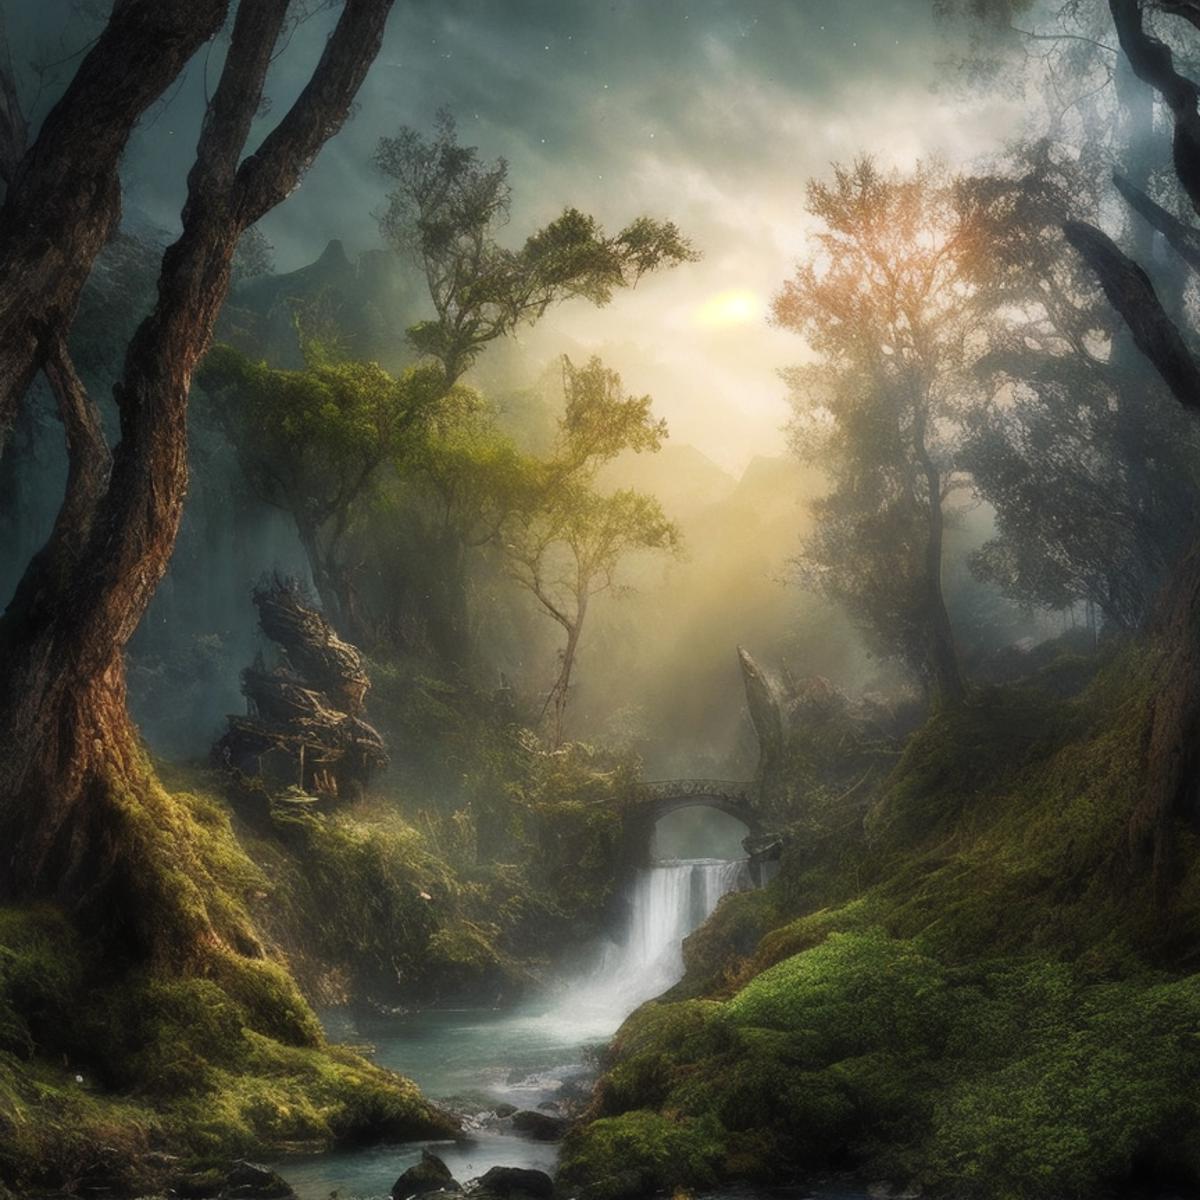 Fantasy Landscape image by ericheisner650